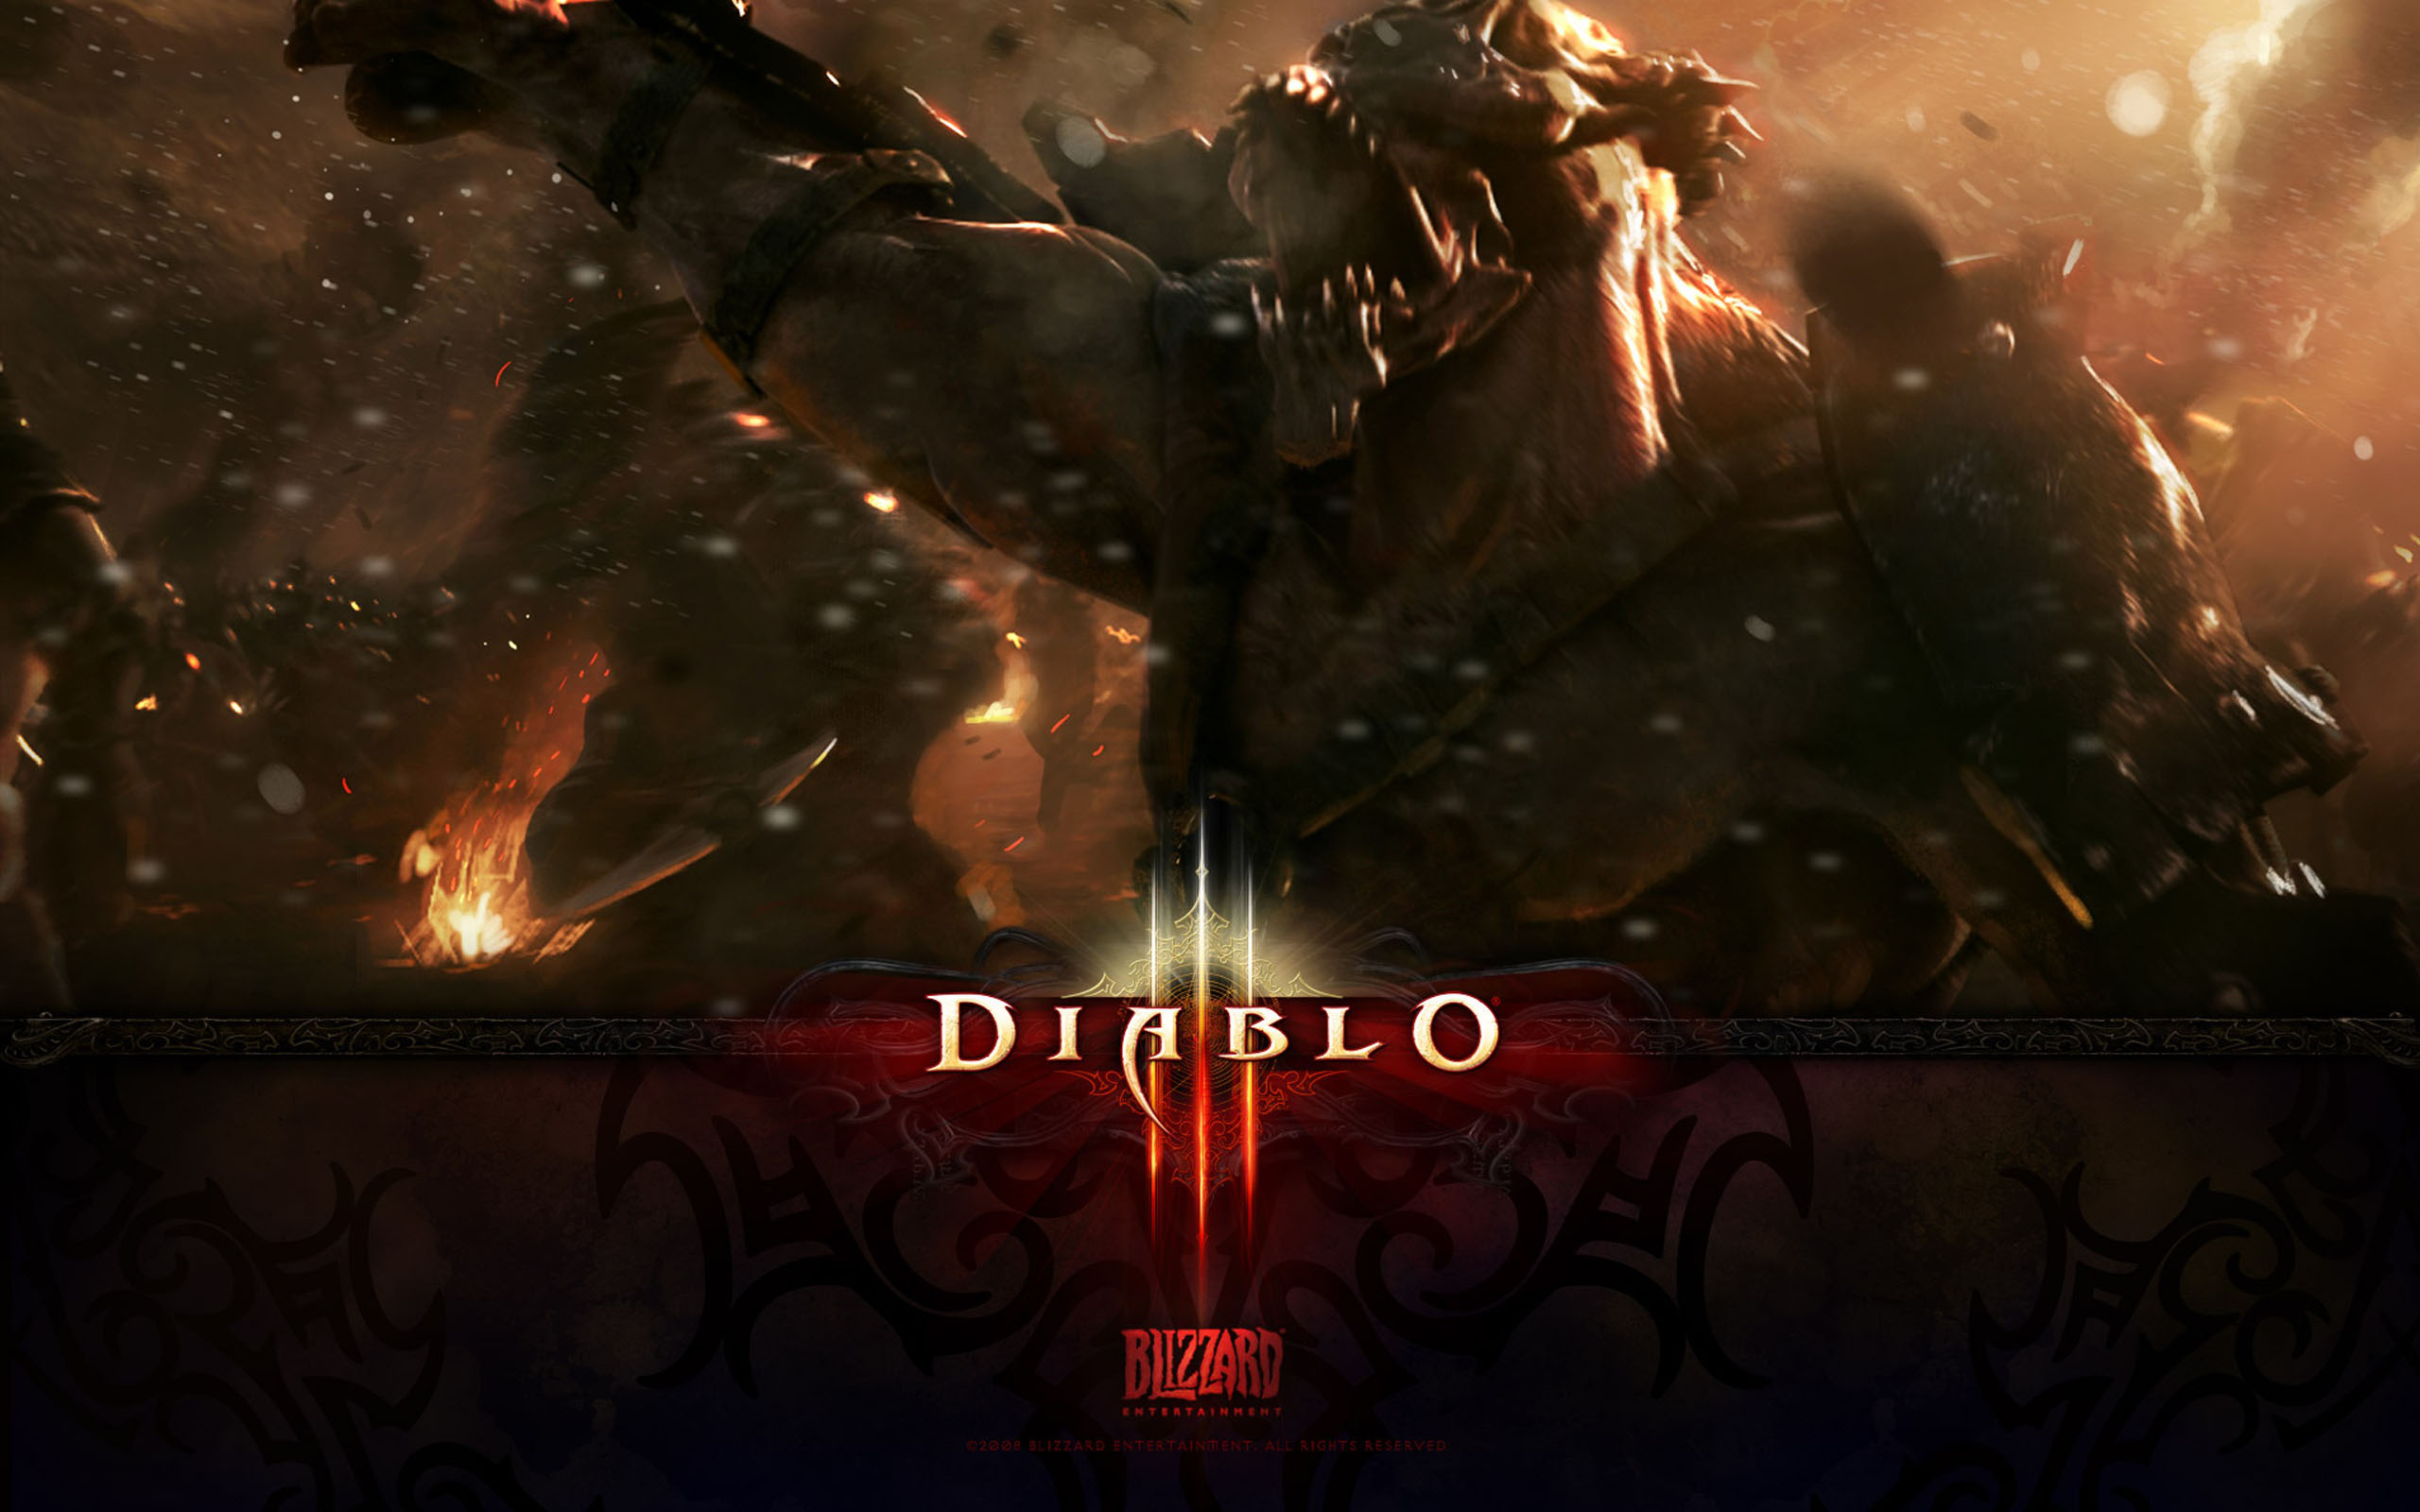 A dark and fiery video game battle scene from Diablo III.